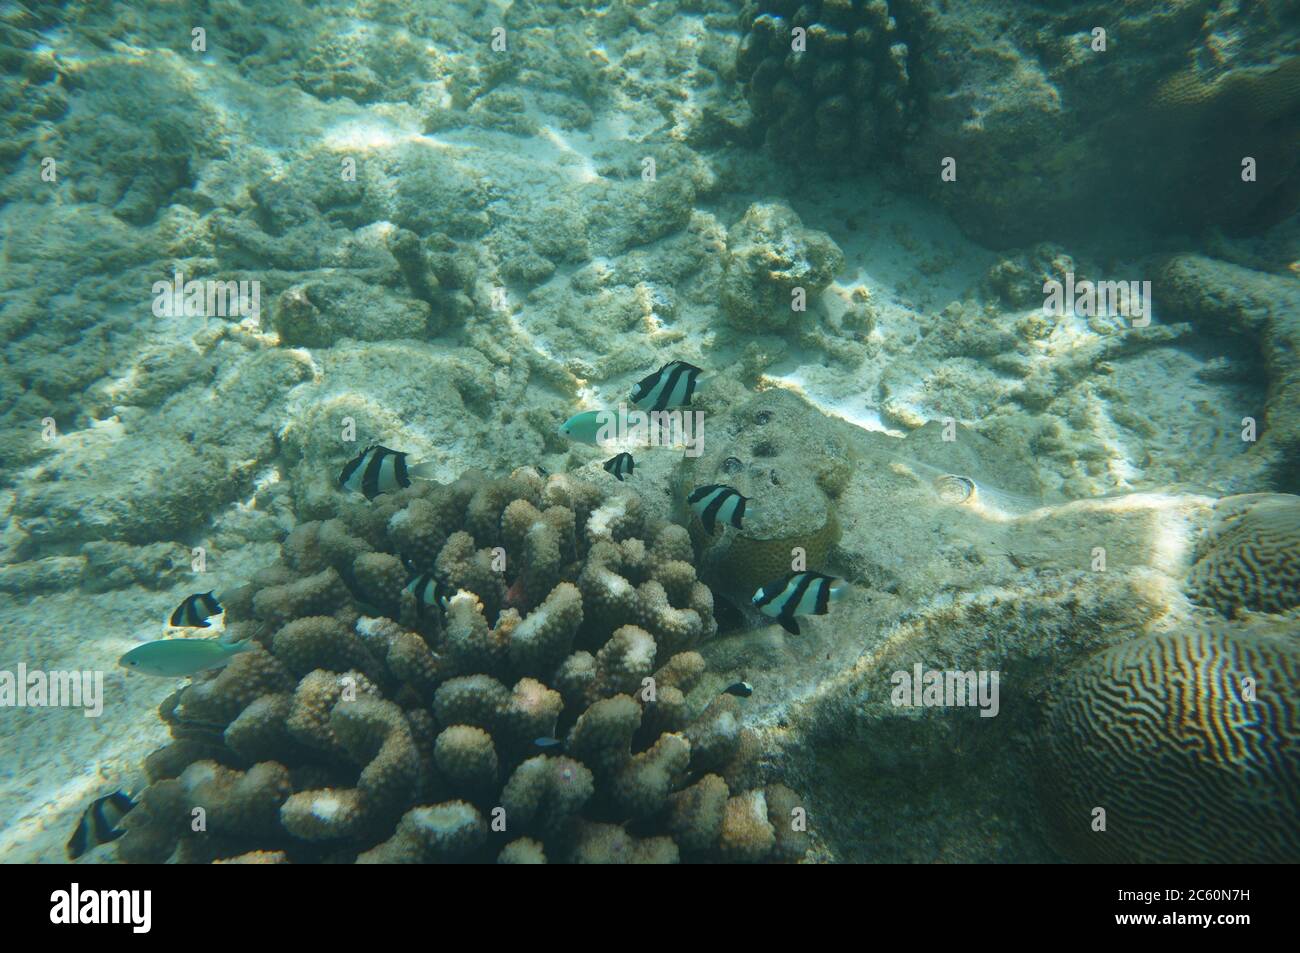 Whitetail Dascyllus in a coral Stock Photo